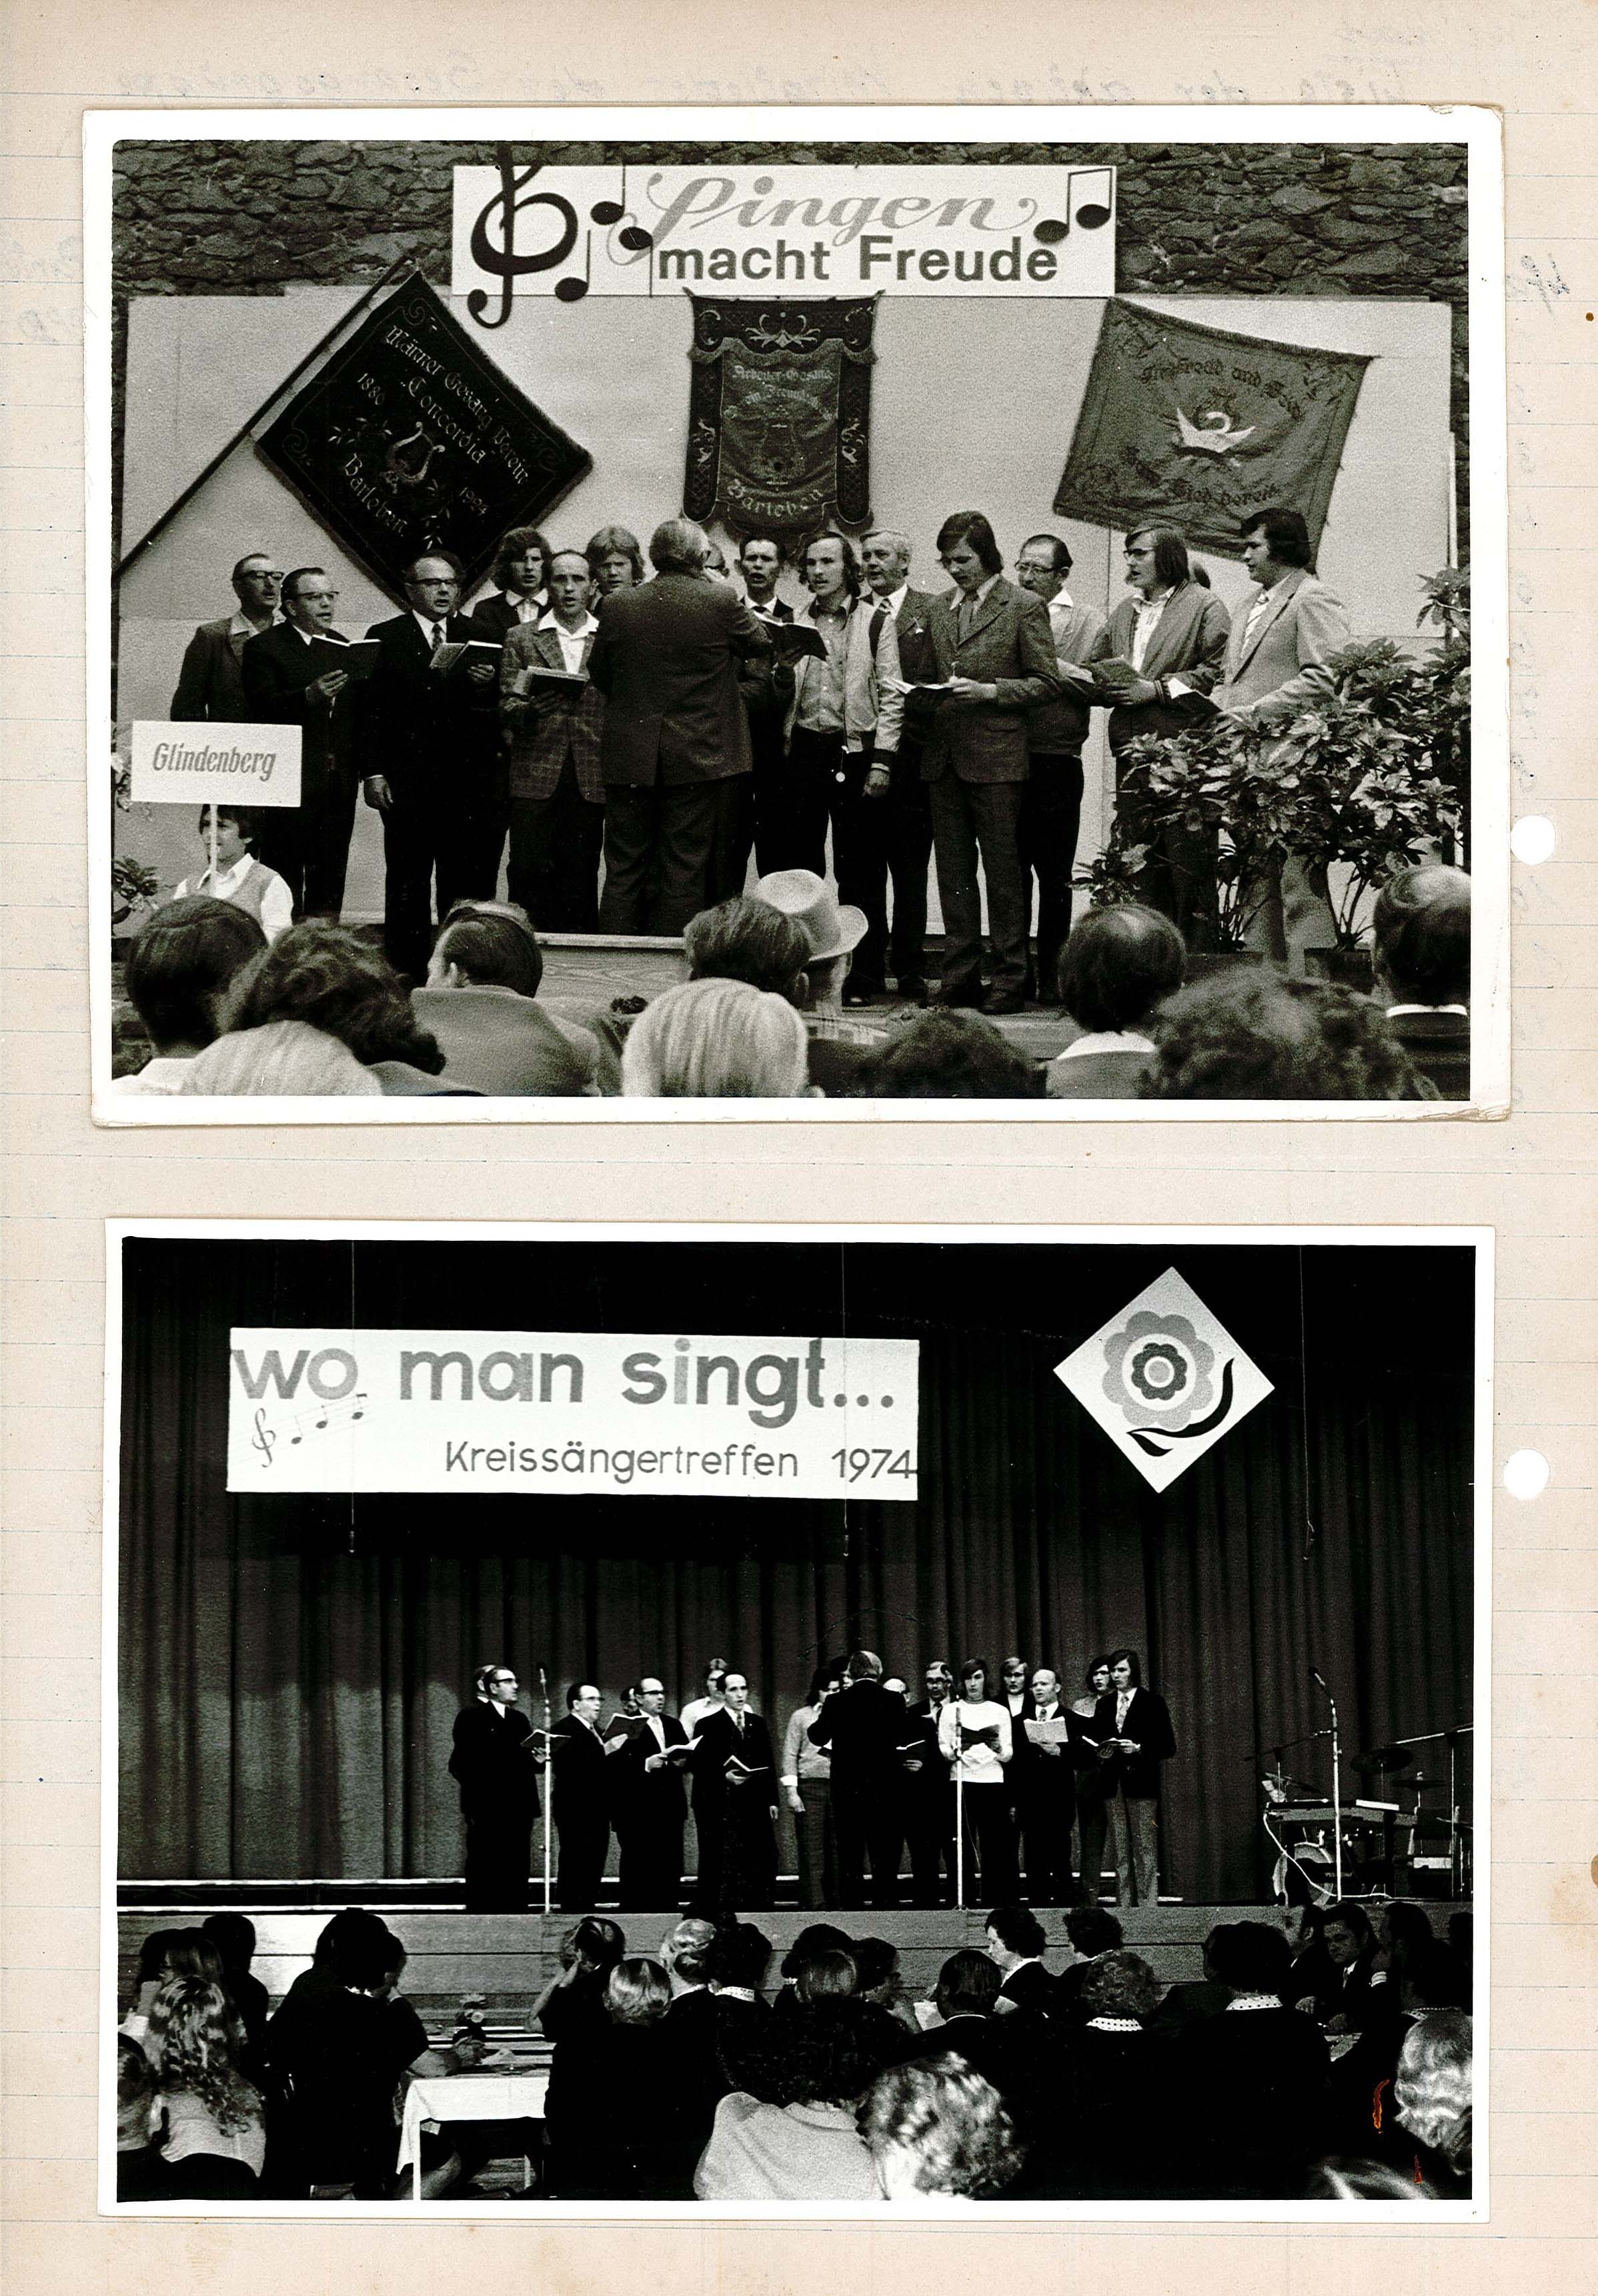 Duplikat Liste der aktiven Mitglieder der Gesangsgruppe in Glindenberg / 2 Fotografien von Auftritten der Gesangsgruppe in Glindenberg (Museum Wolmirstedt RR-F)